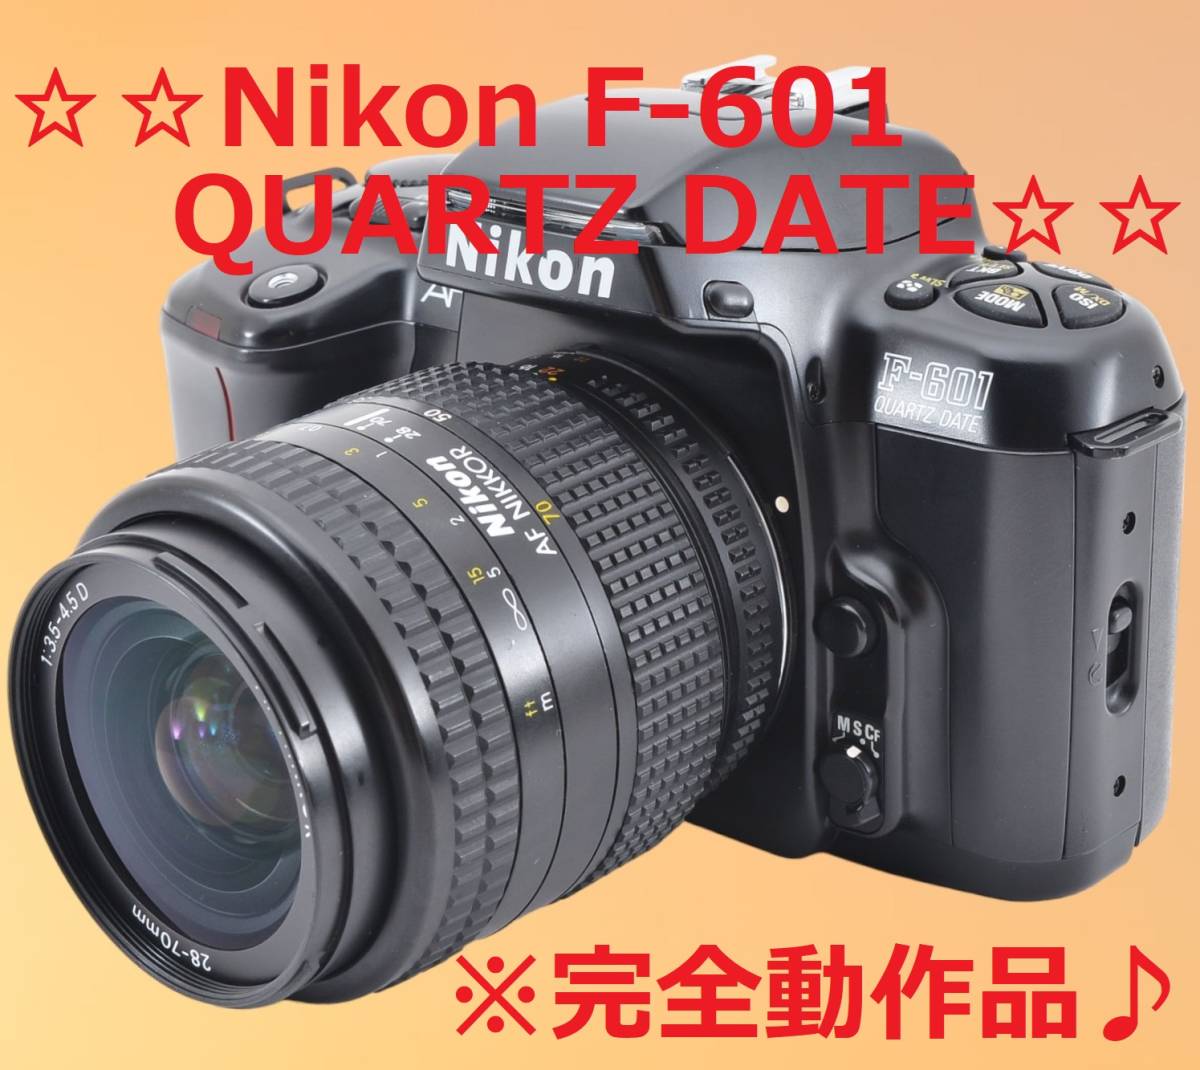 くらしを楽しむアイテム 美品 カンタン操作♪ Nikon F-601 QUARTZ DATE